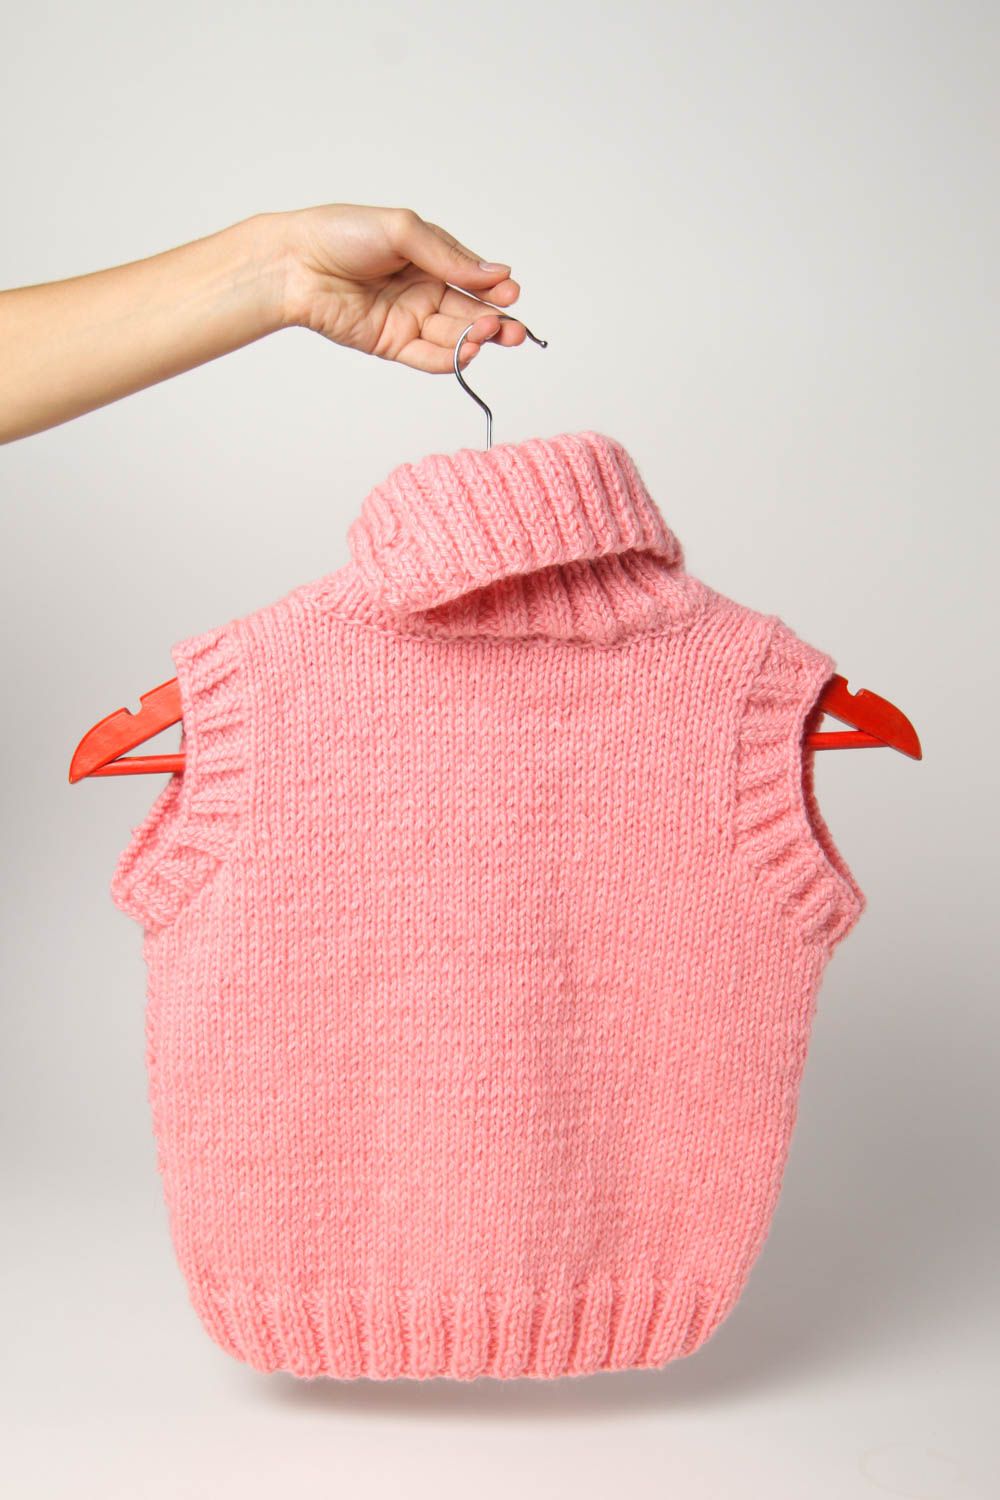 Жилетка для девочки ручной работы розовый детский жилет безрукавка для девочки фото 3